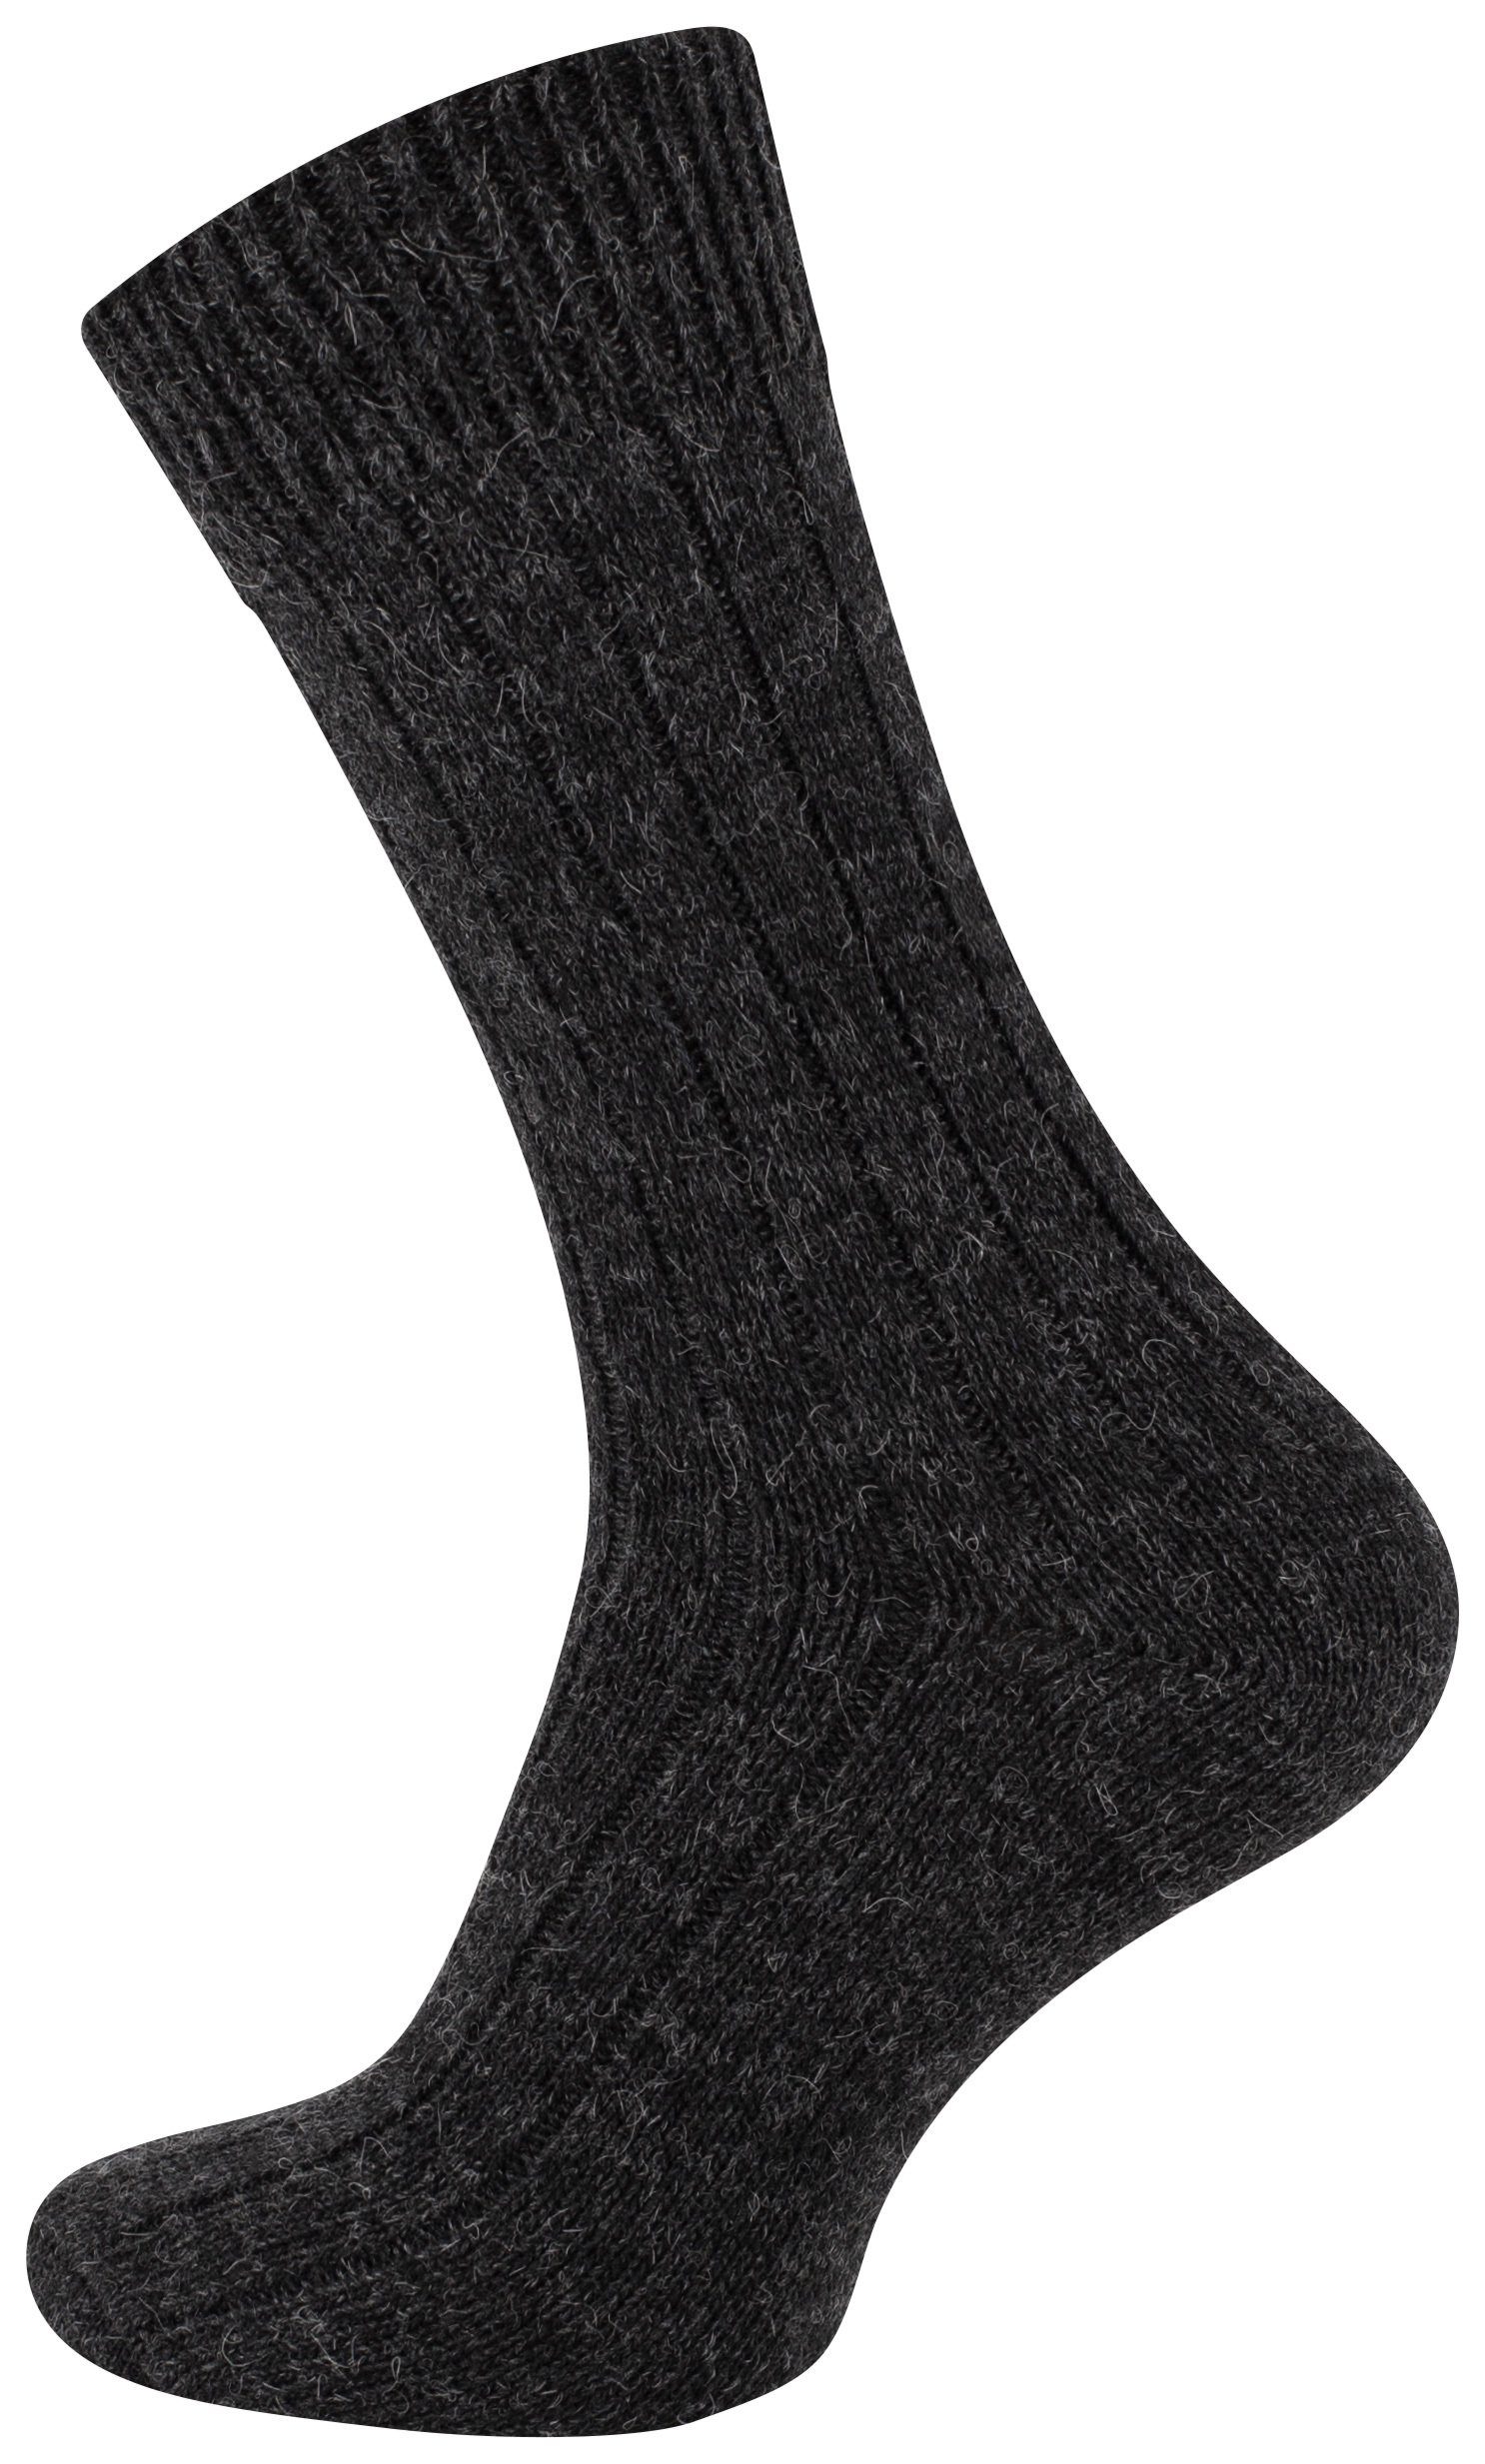 Cotton Prime® Socken vorgewaschen Socken und gefärbt (2-Paar) ökologisch Alpaka anthrazit/grau